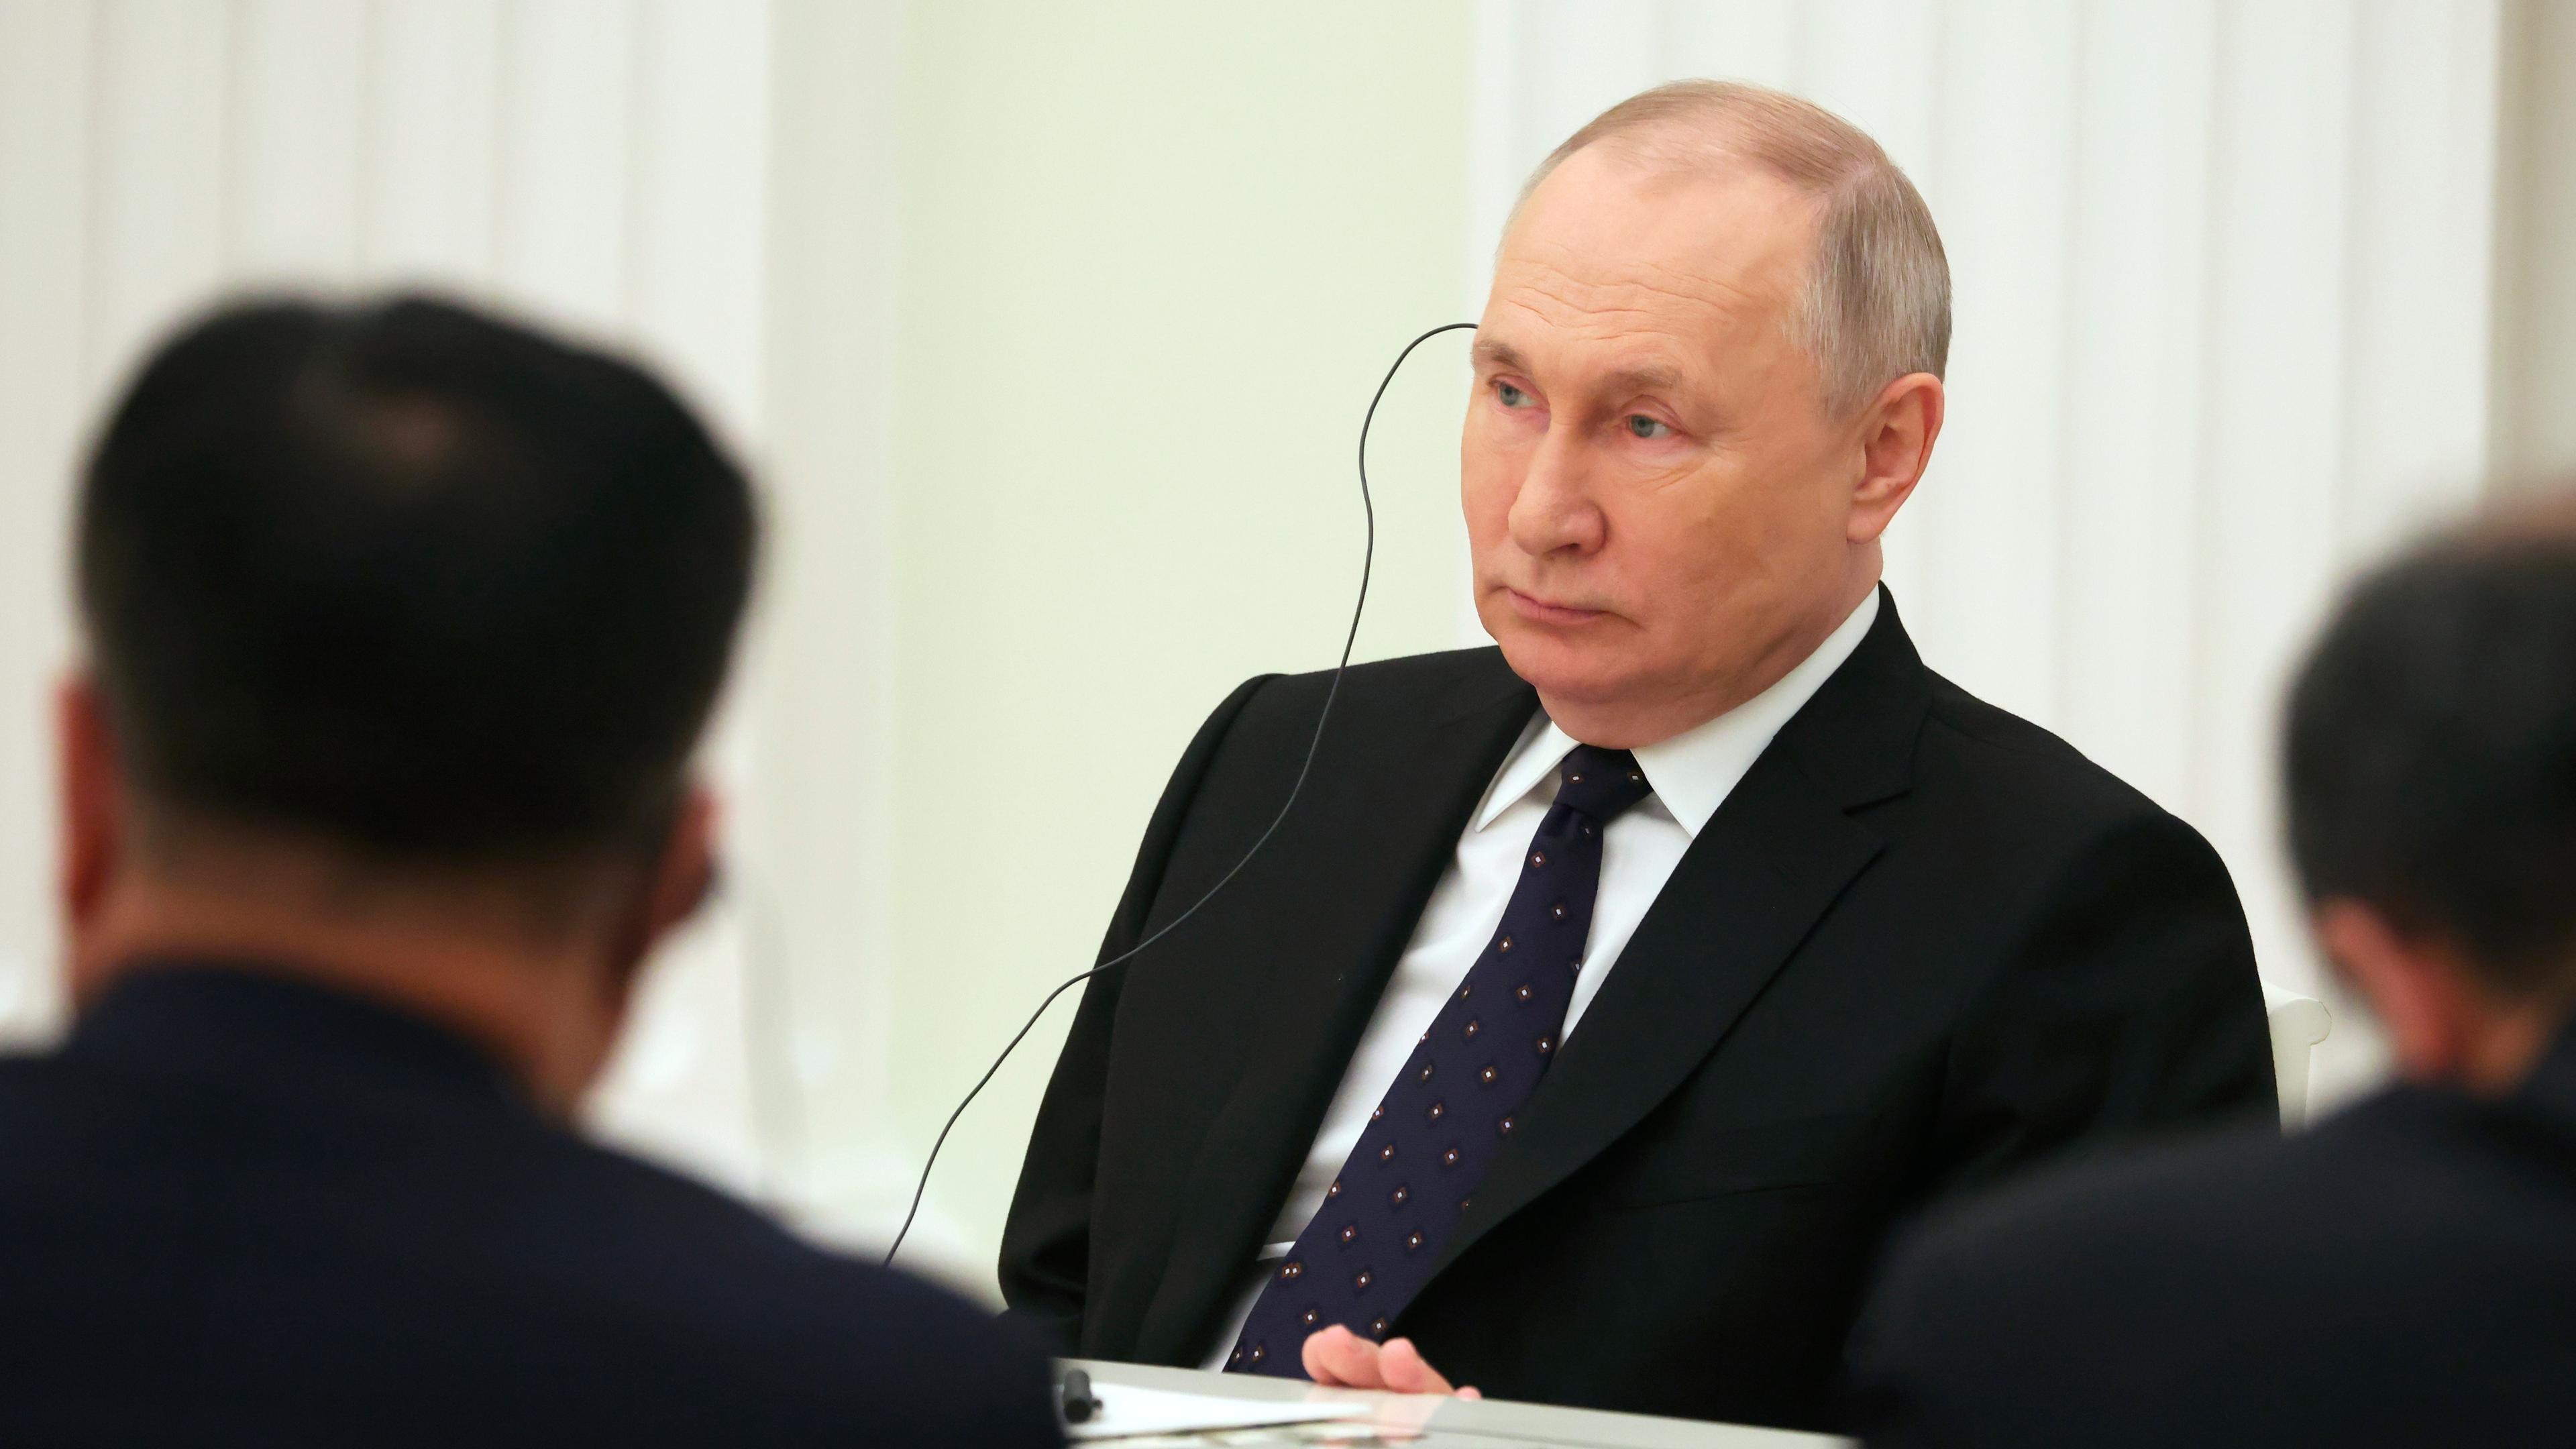 Der russische Präsident sitzt an einem Tisch und hört über einen Kopfhörer einer Übersetzung zu